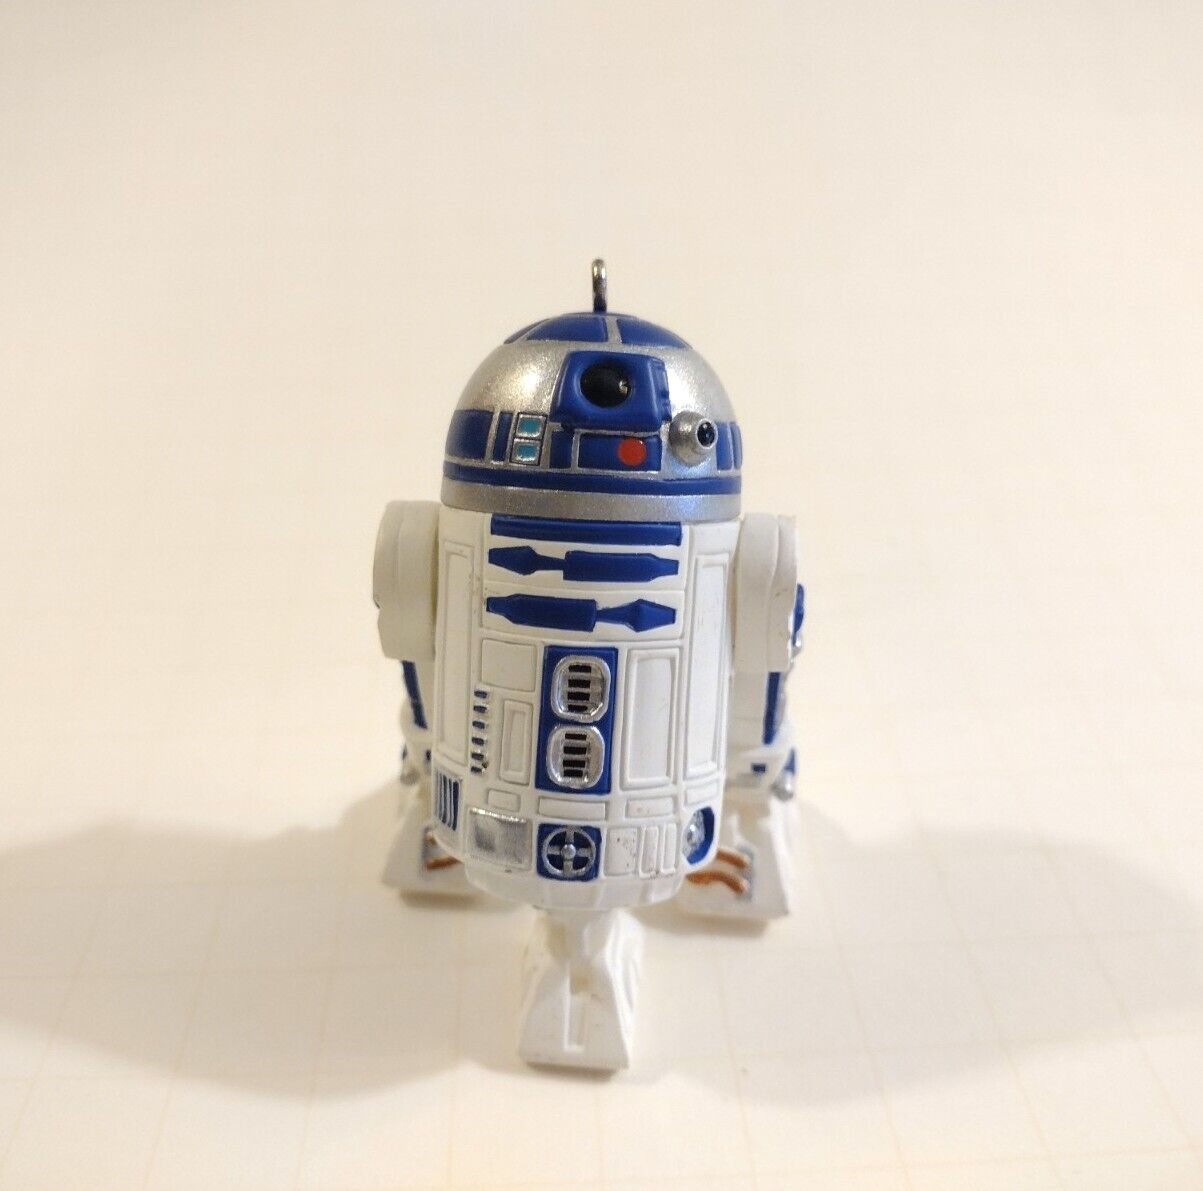 Hallmark Keepsake Ornament Star Wars R2-D2 (with sound), 2001 Vtg Collectible 